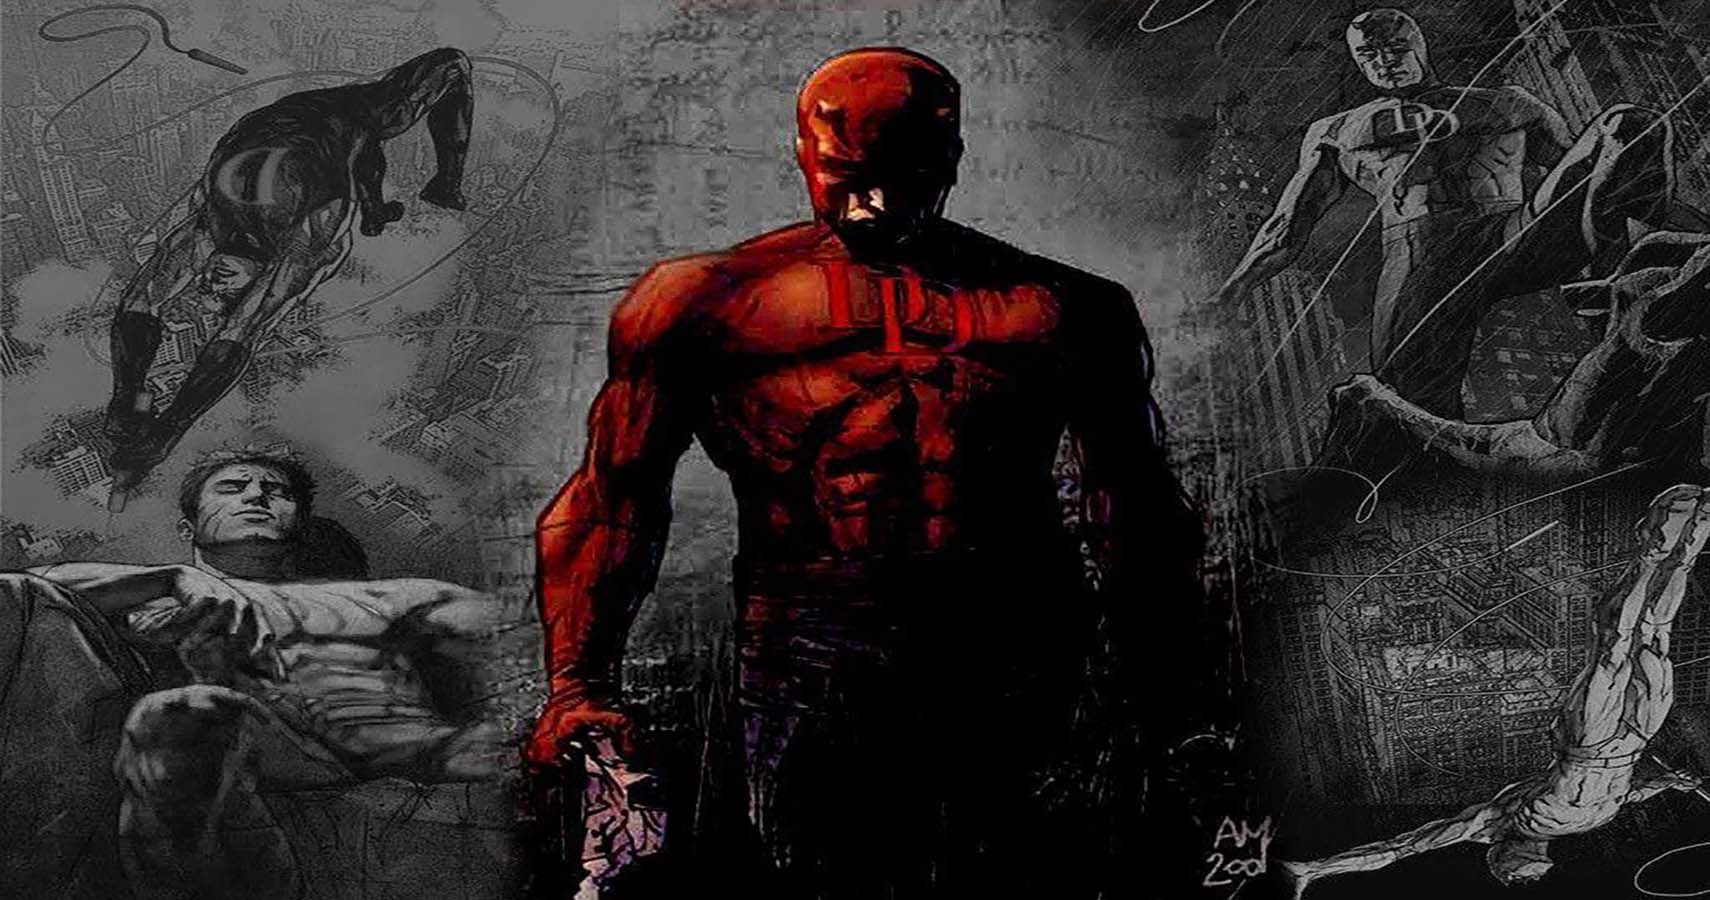 a period of depression for Daredevil 